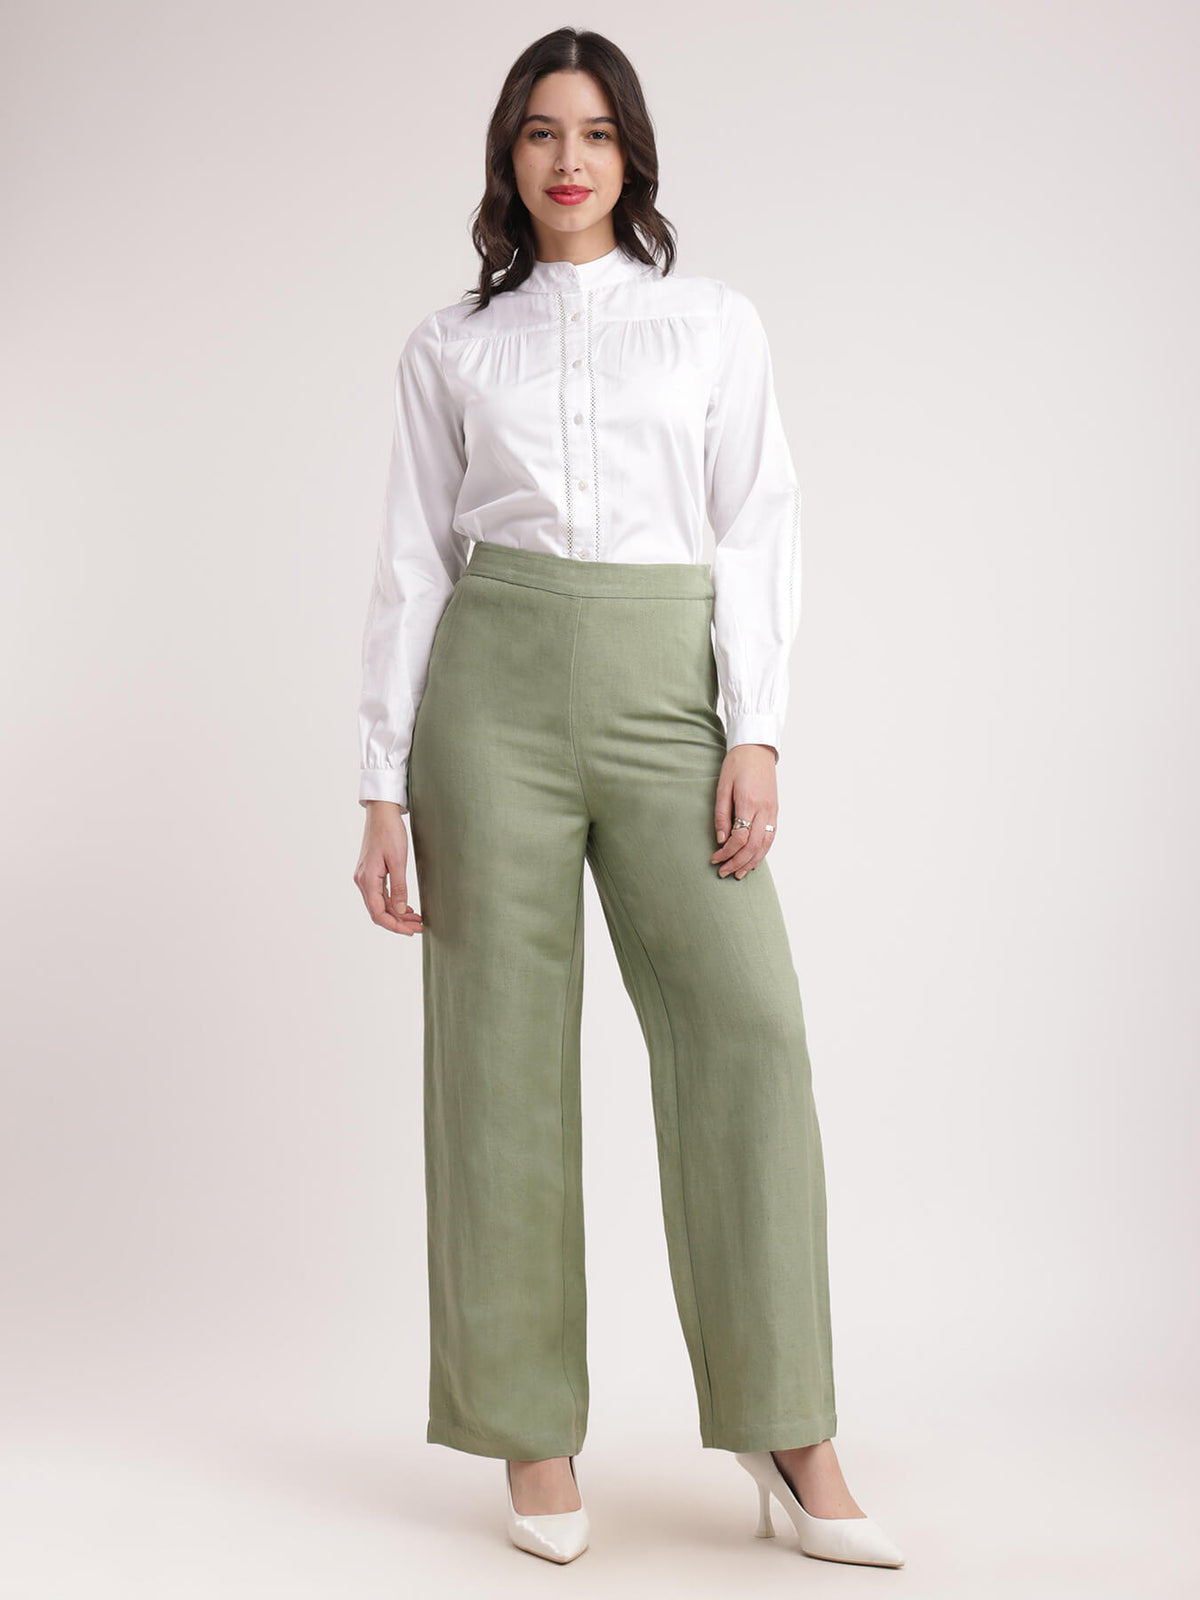 Linen Elasticated Wide Leg Pants - Sap Green